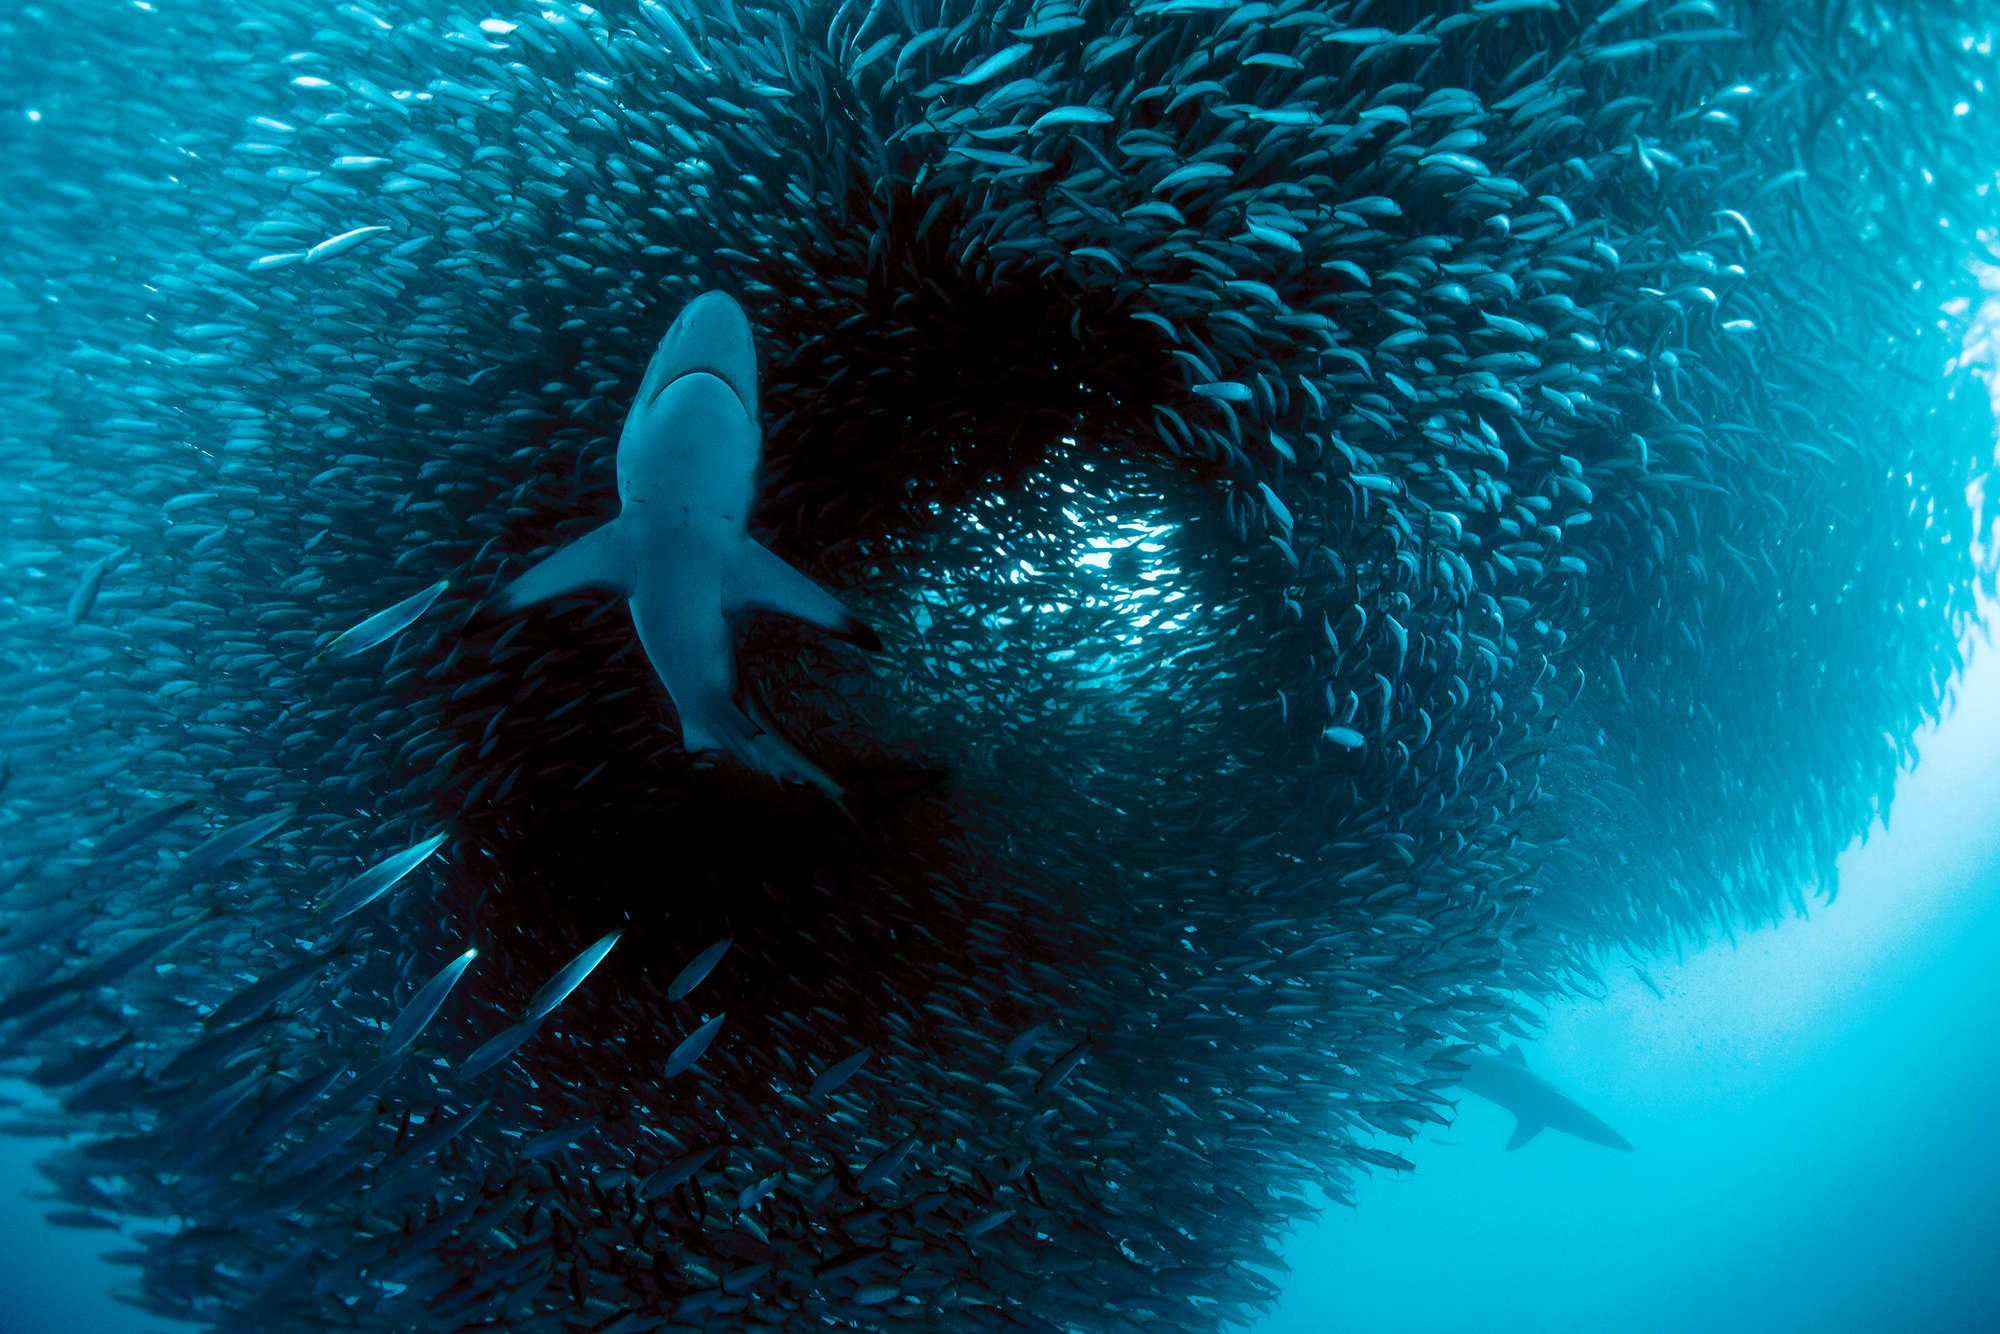             Meeres Fototapete mit Hai beim jagen auf Matt Glattvlies
        